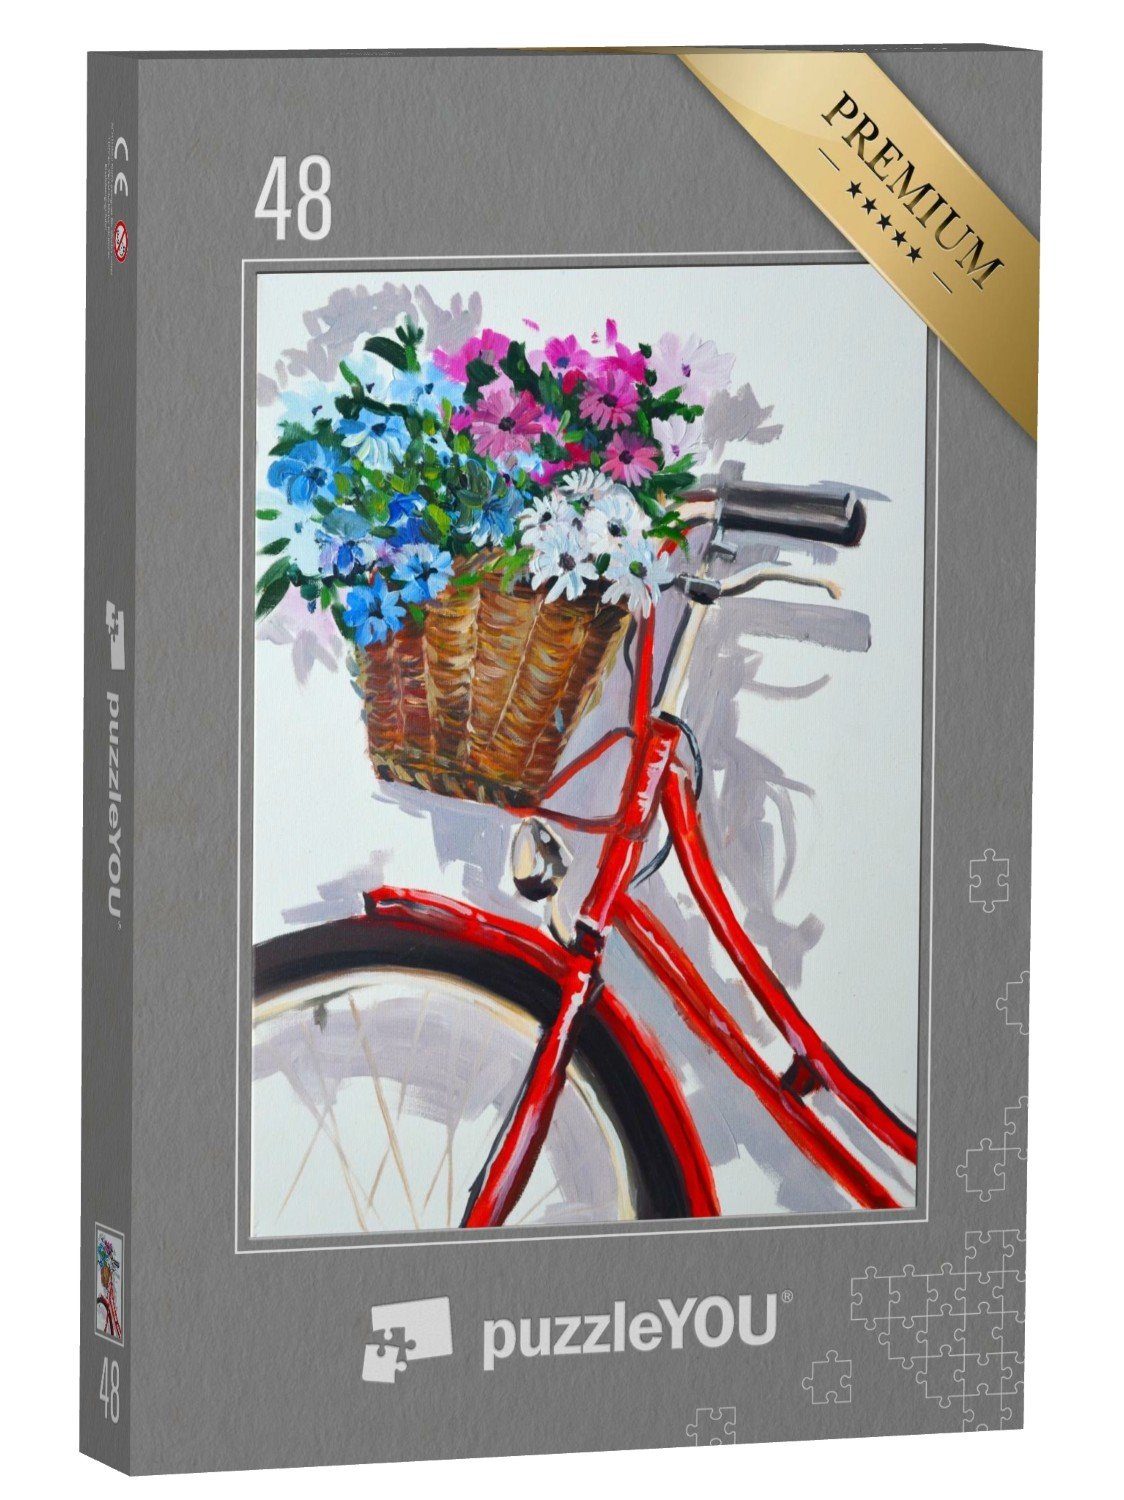 puzzleYOU Puzzle Ölgemälde: Fahrradkorb, vollgepackt mit Blumen, 48 Puzzleteile, puzzleYOU-Kollektionen Ölbilder